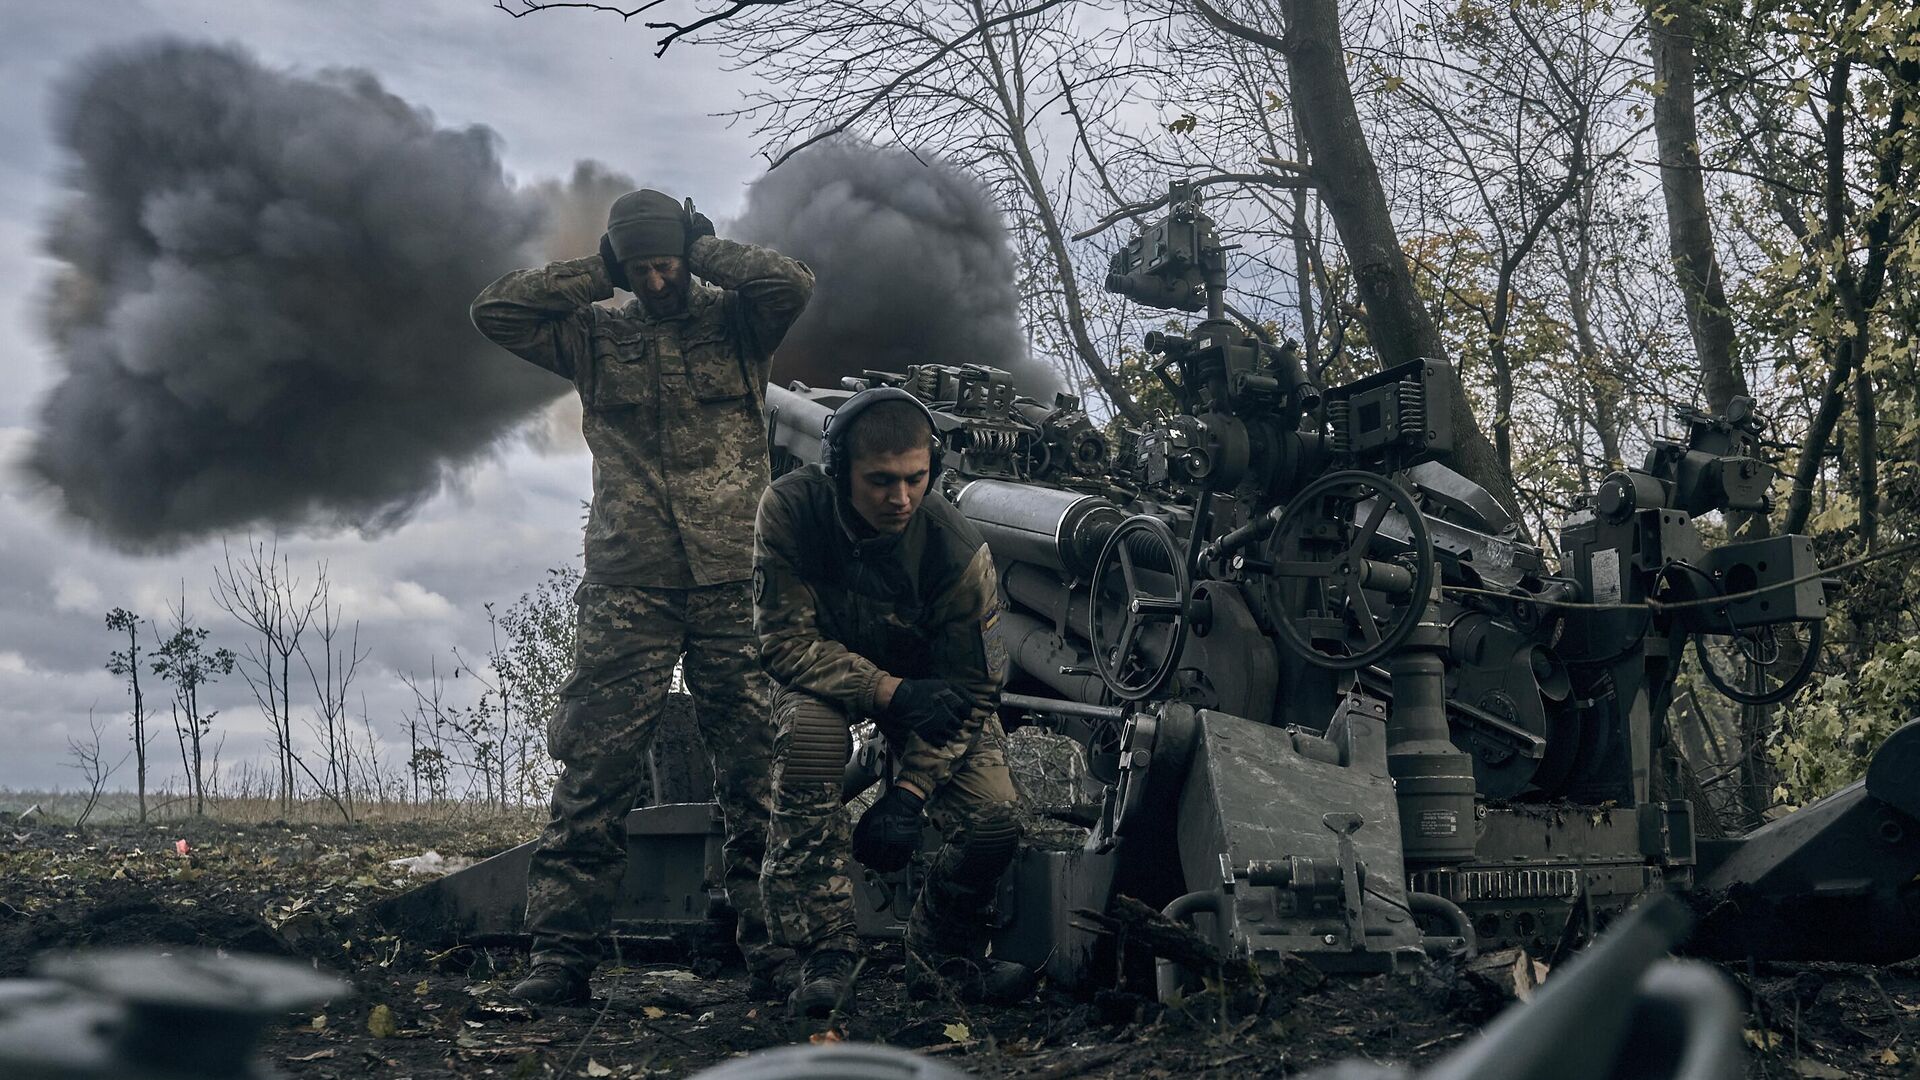 Украинские солдаты обстреливают российские позиции из гаубицы М777 в восточной части Донецкой области Украины - Sputnik Узбекистан, 1920, 20.12.2022